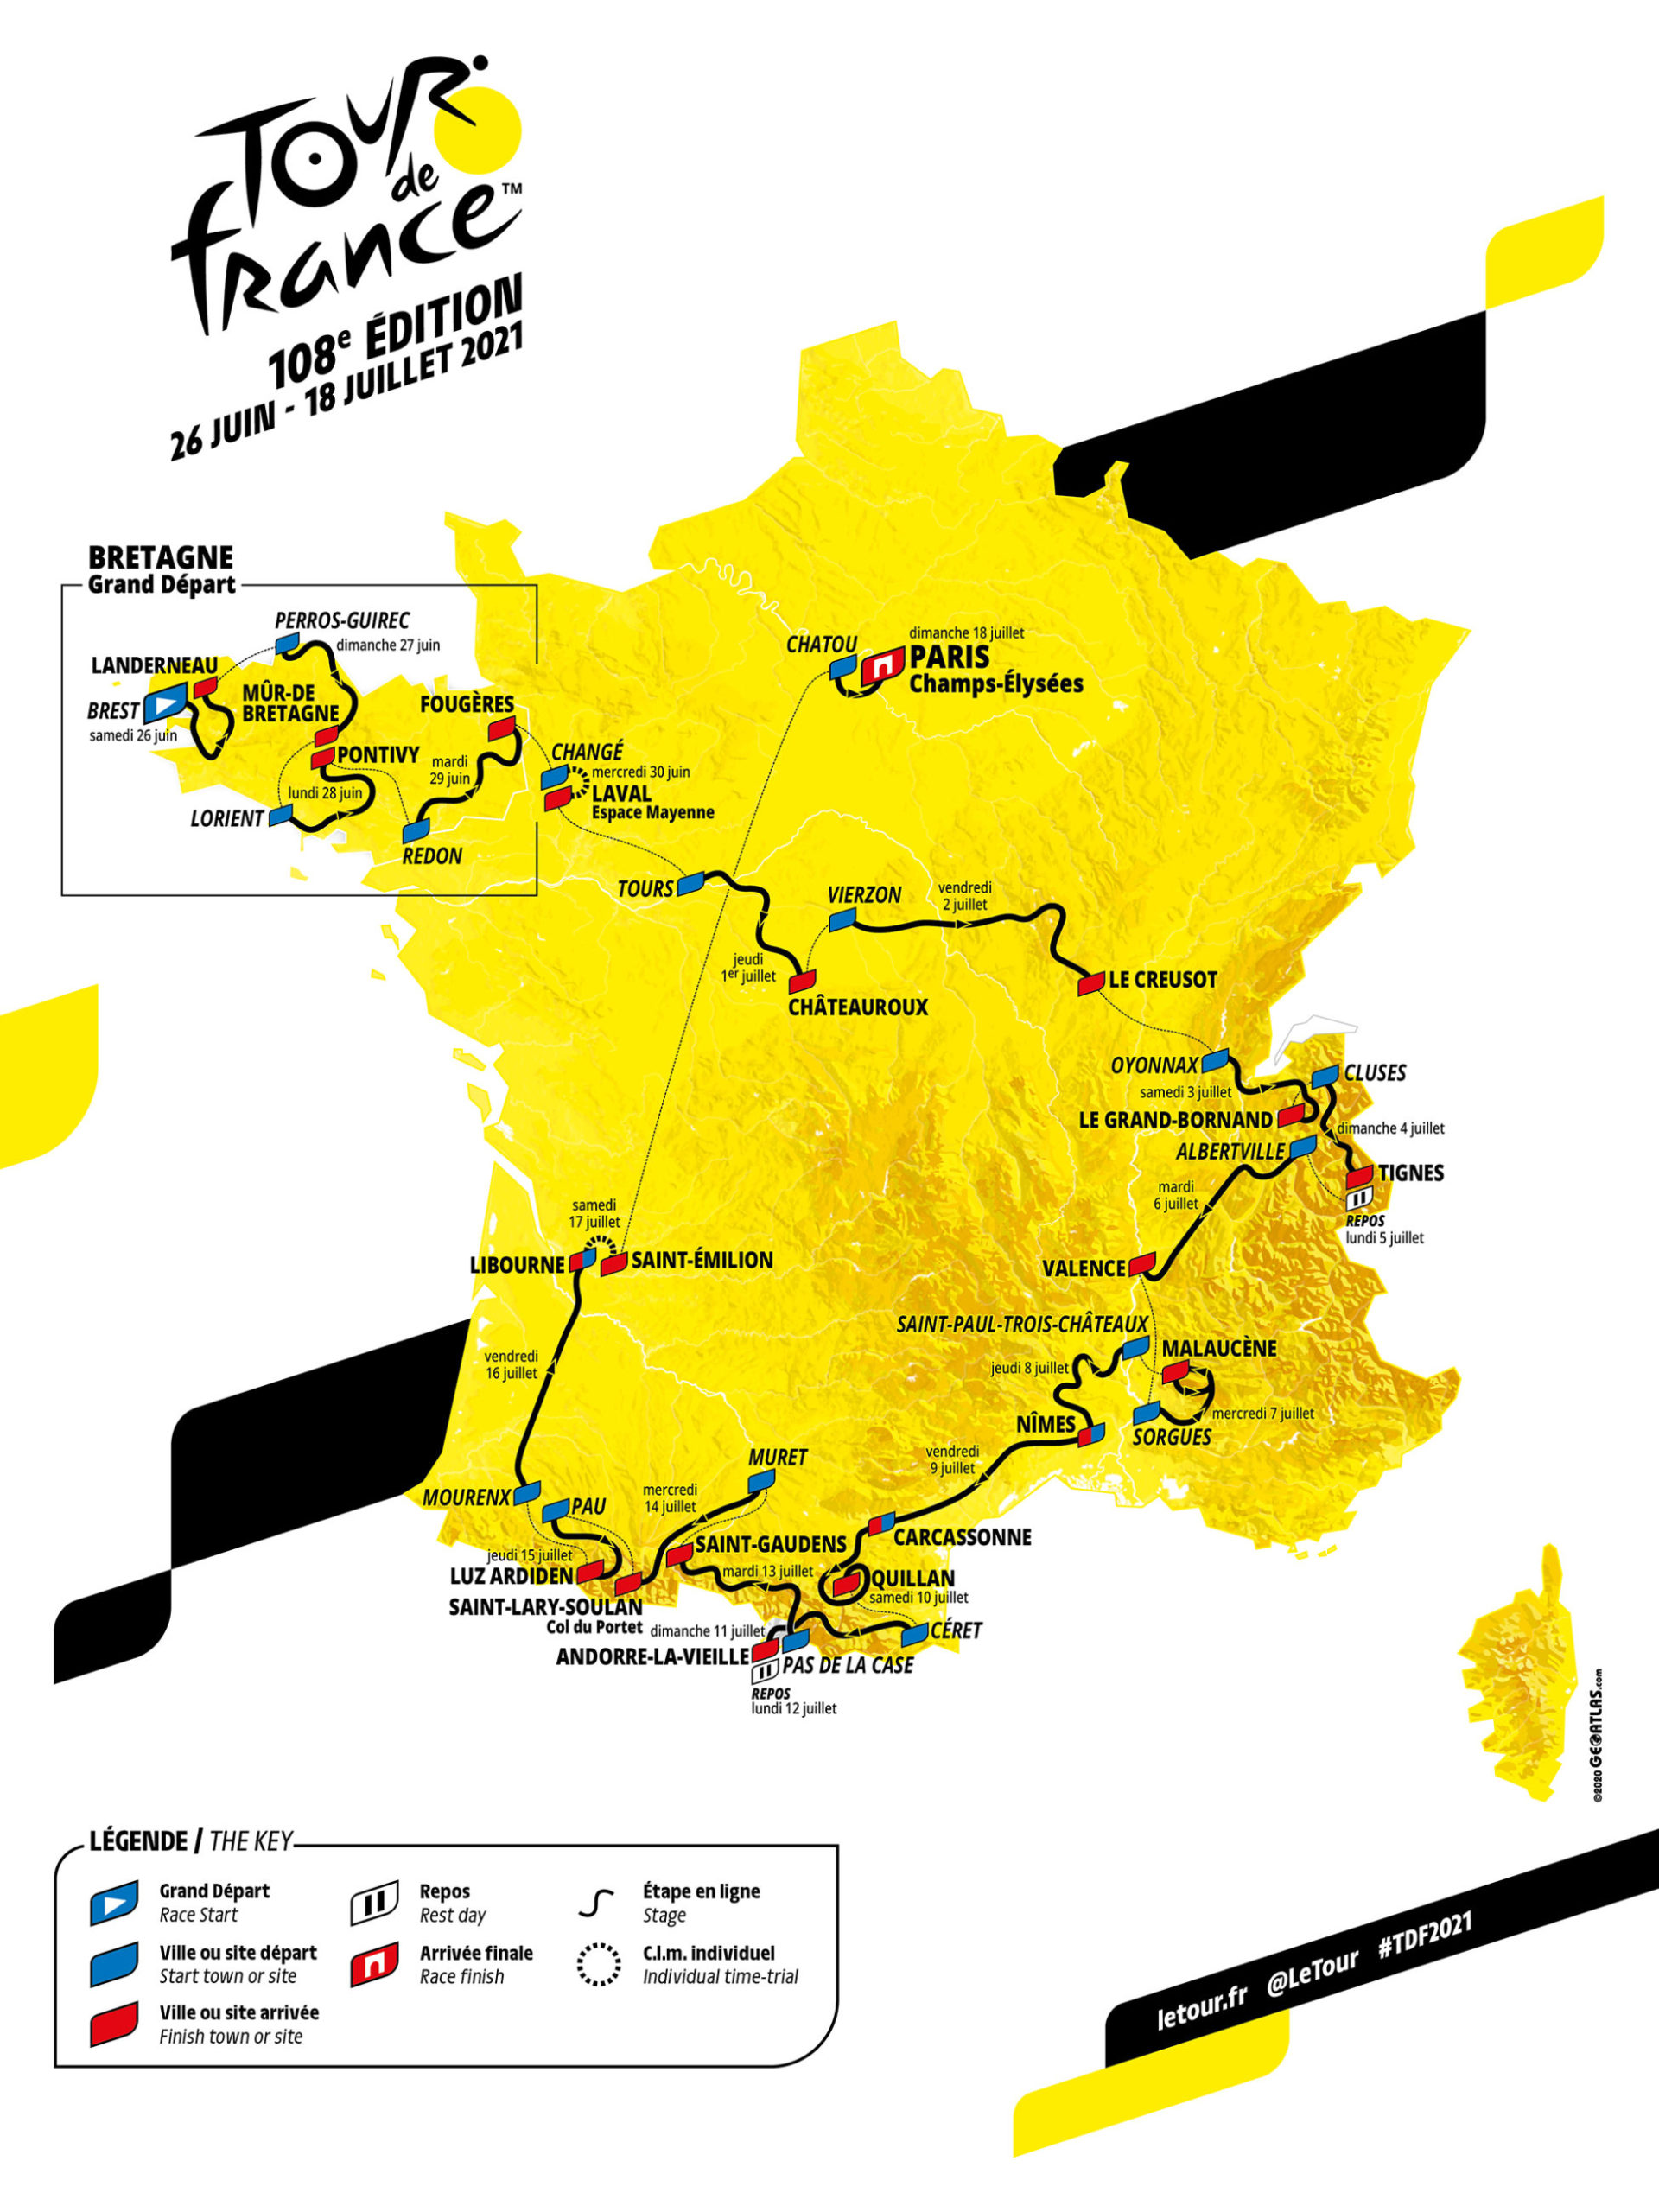 Ikonisk Tour de France-fjell skal bestiges to ganger på samme dag i 2021